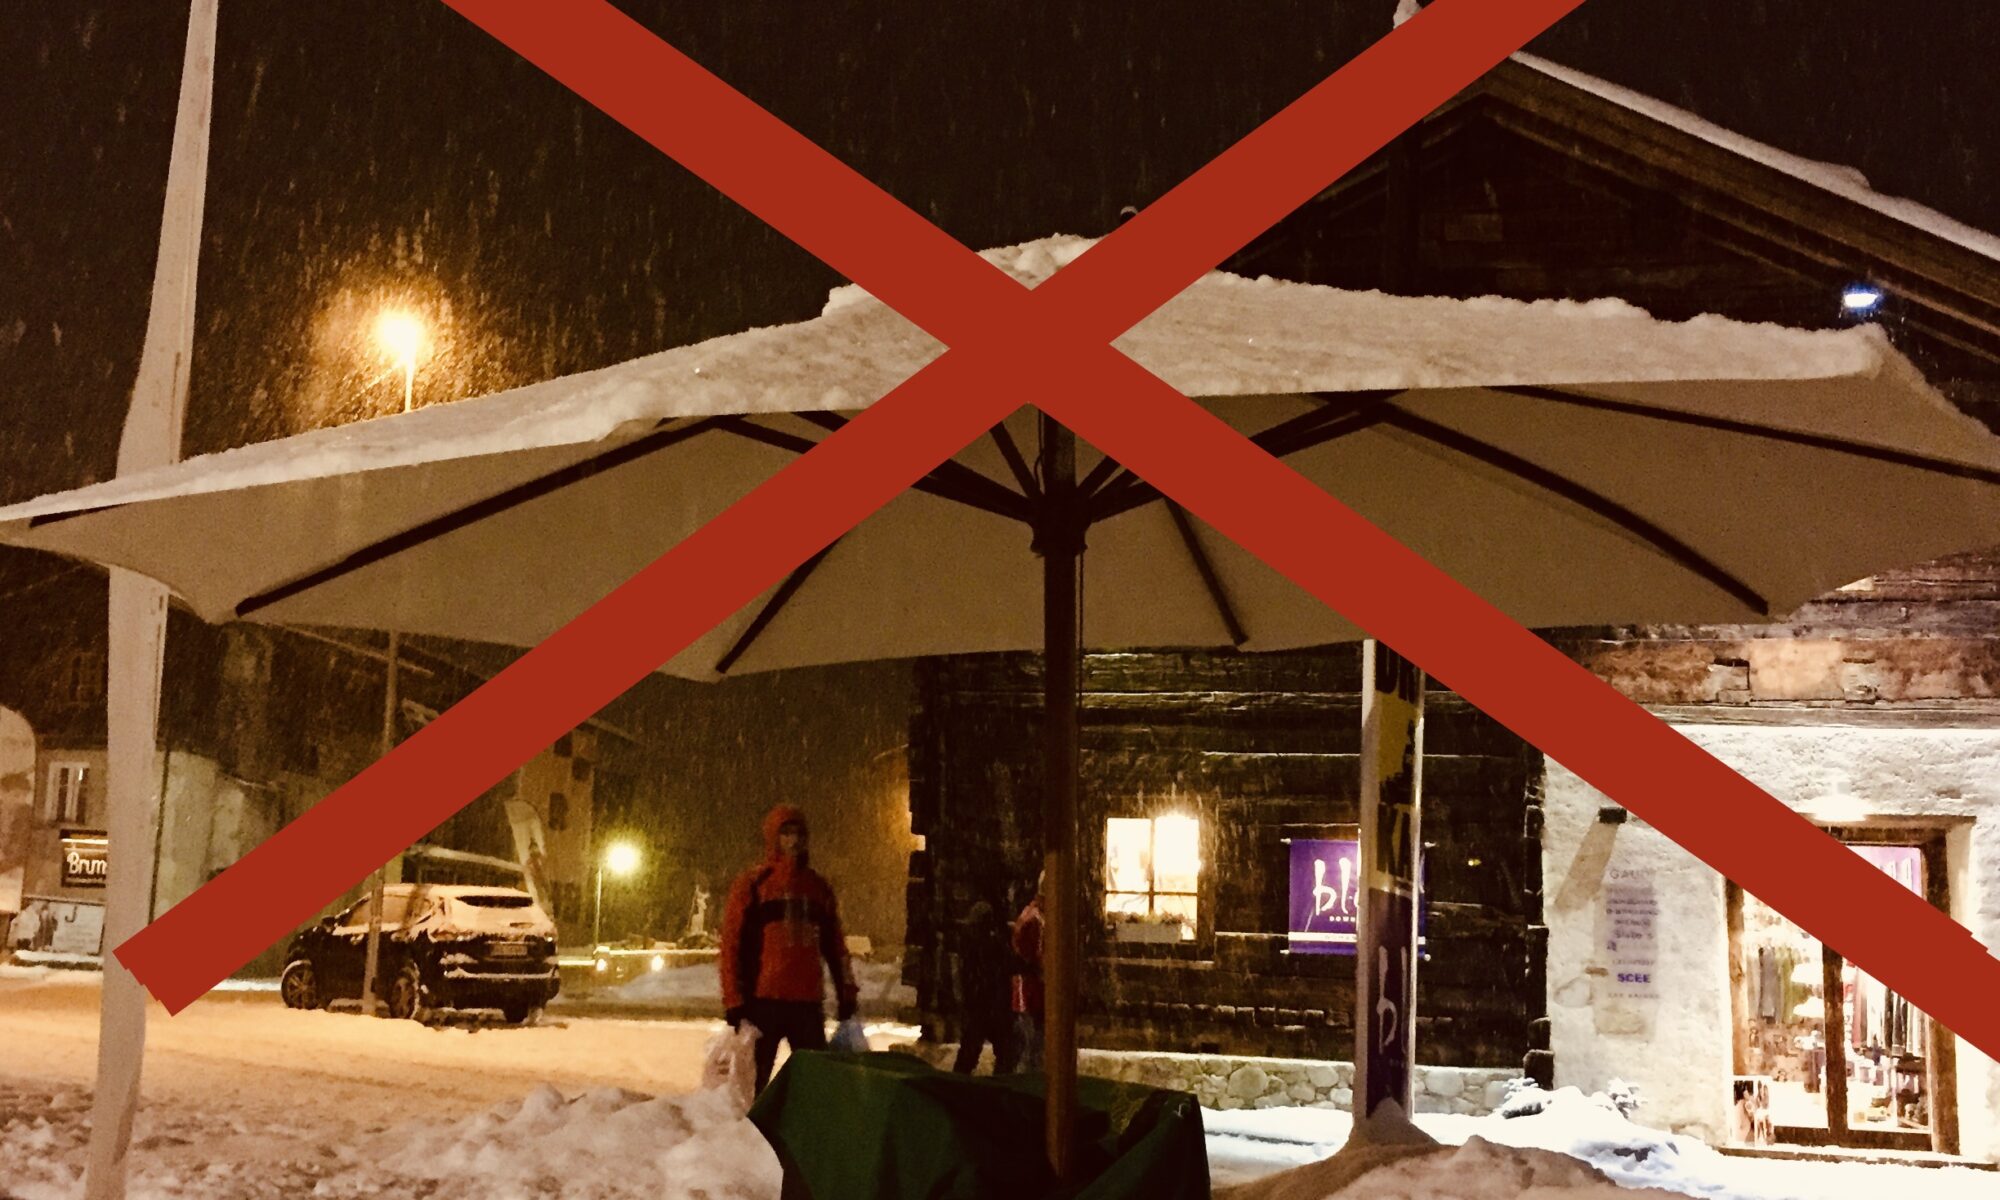 Sonnenschirm nicht im Schnee stehen lassen